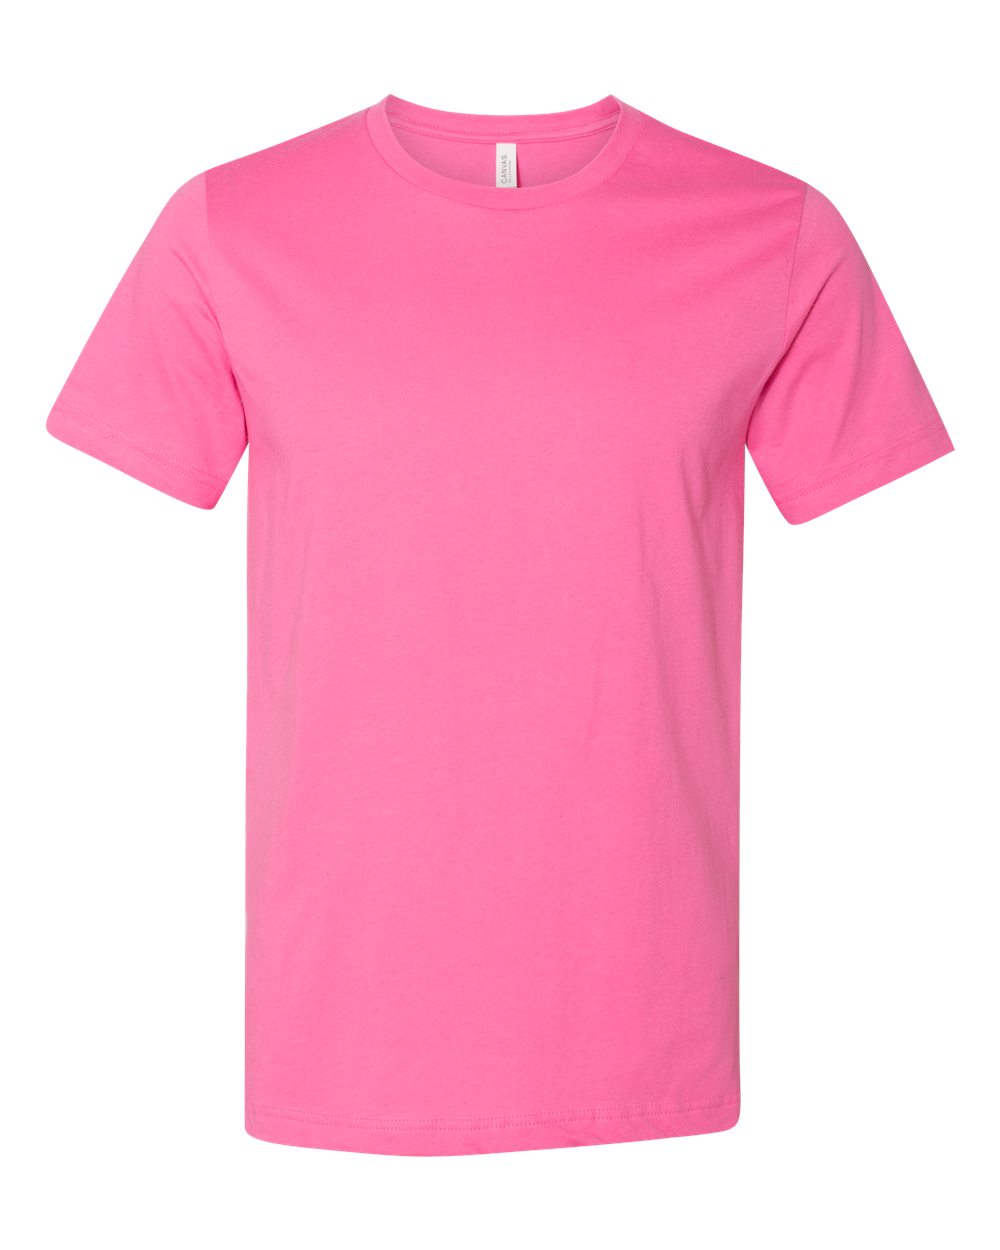 LOOK LIKE MONEY (PINK PRINT)' Women's Premium T-Shirt